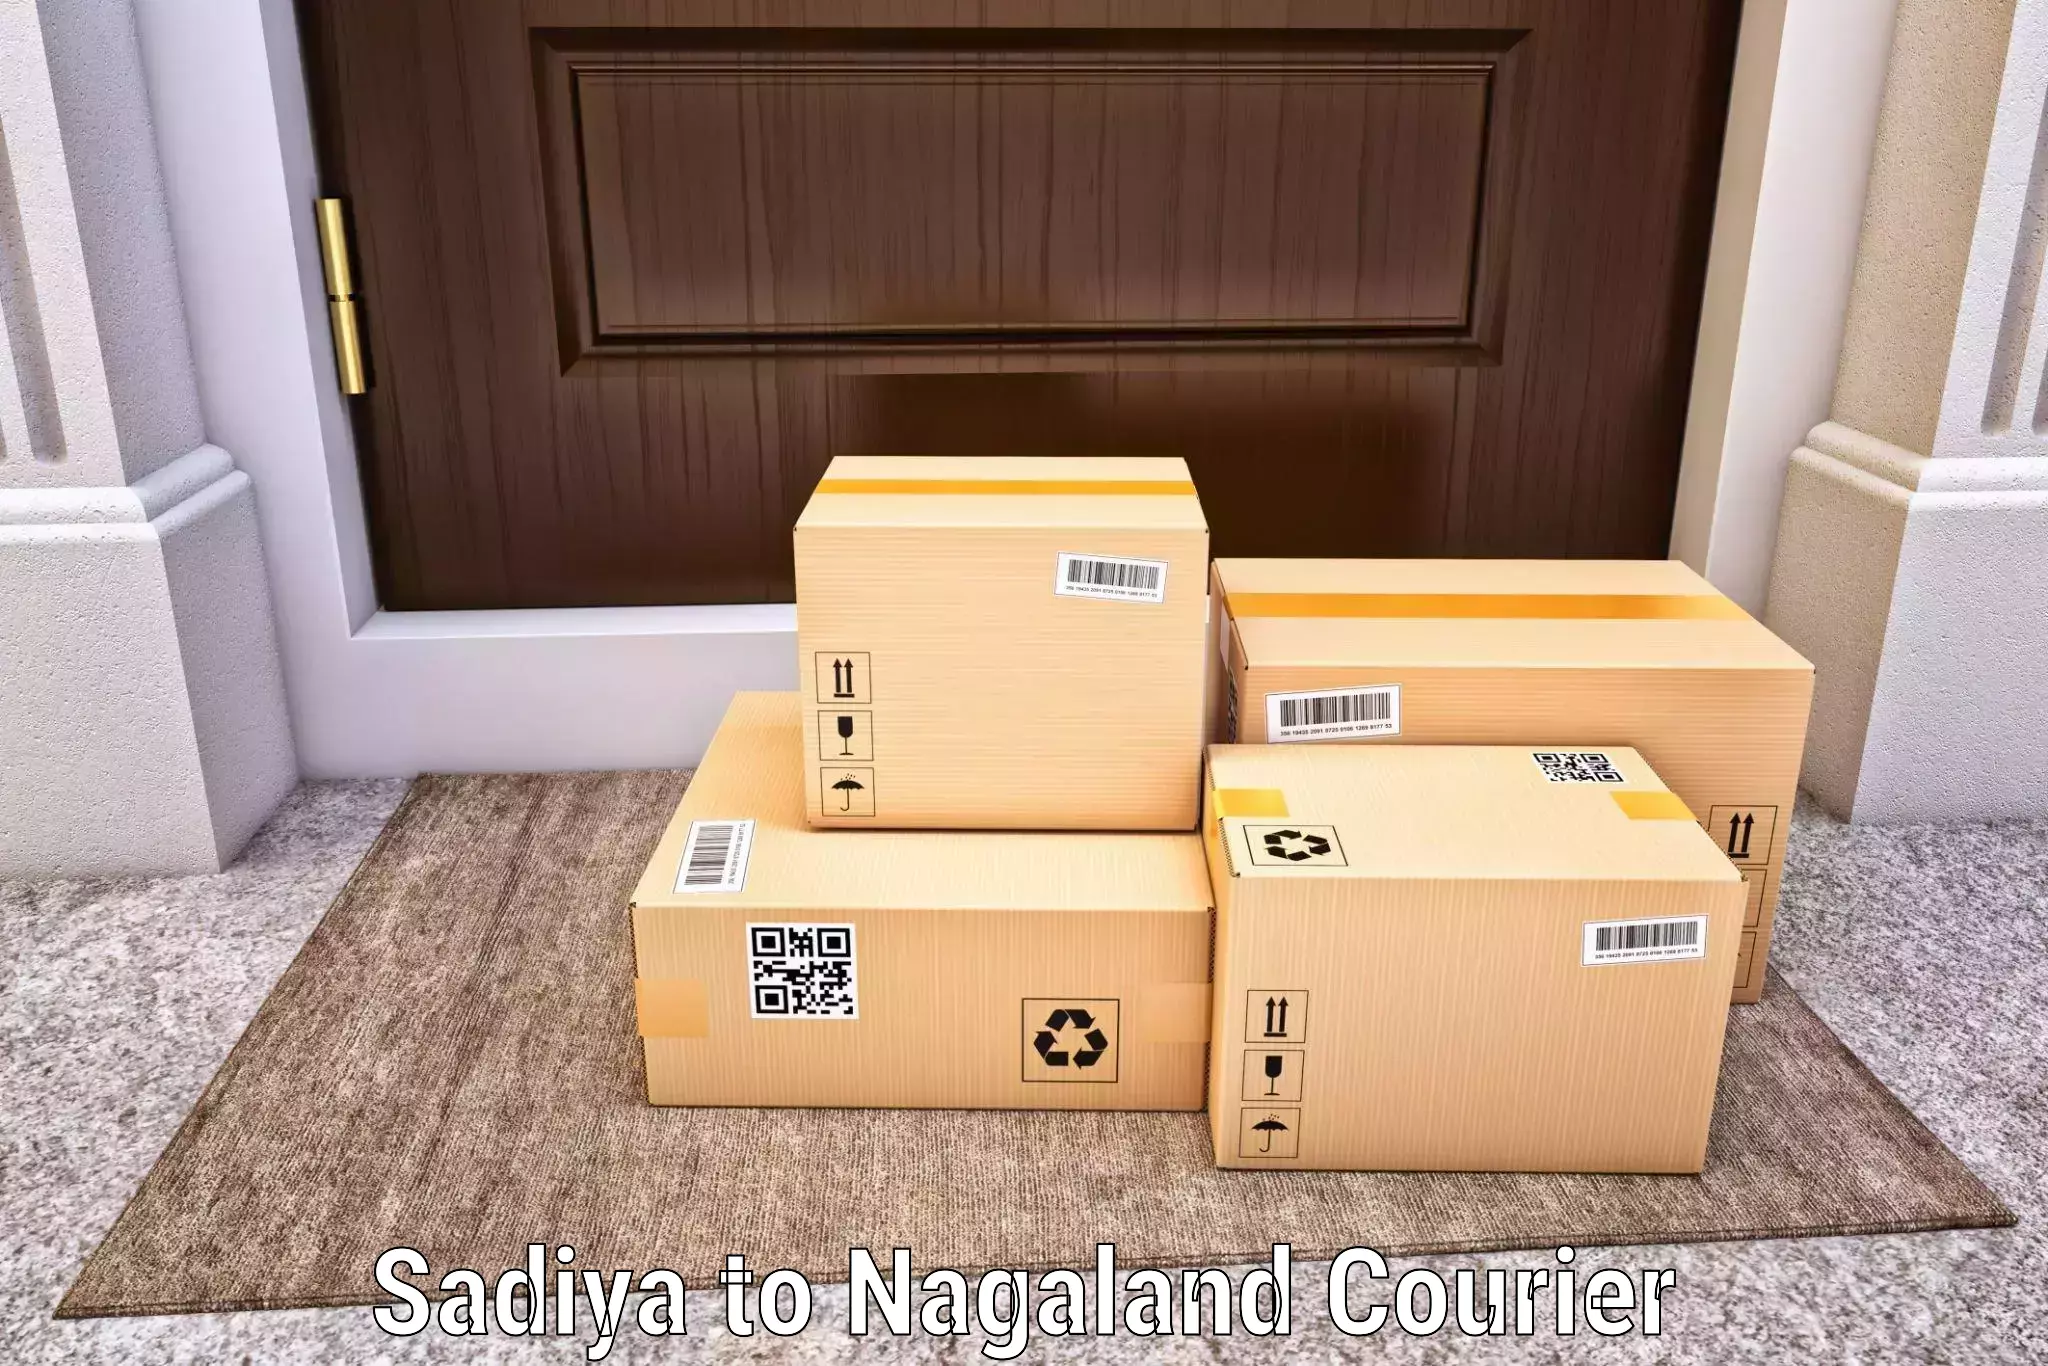 Global shipping networks Sadiya to Nagaland